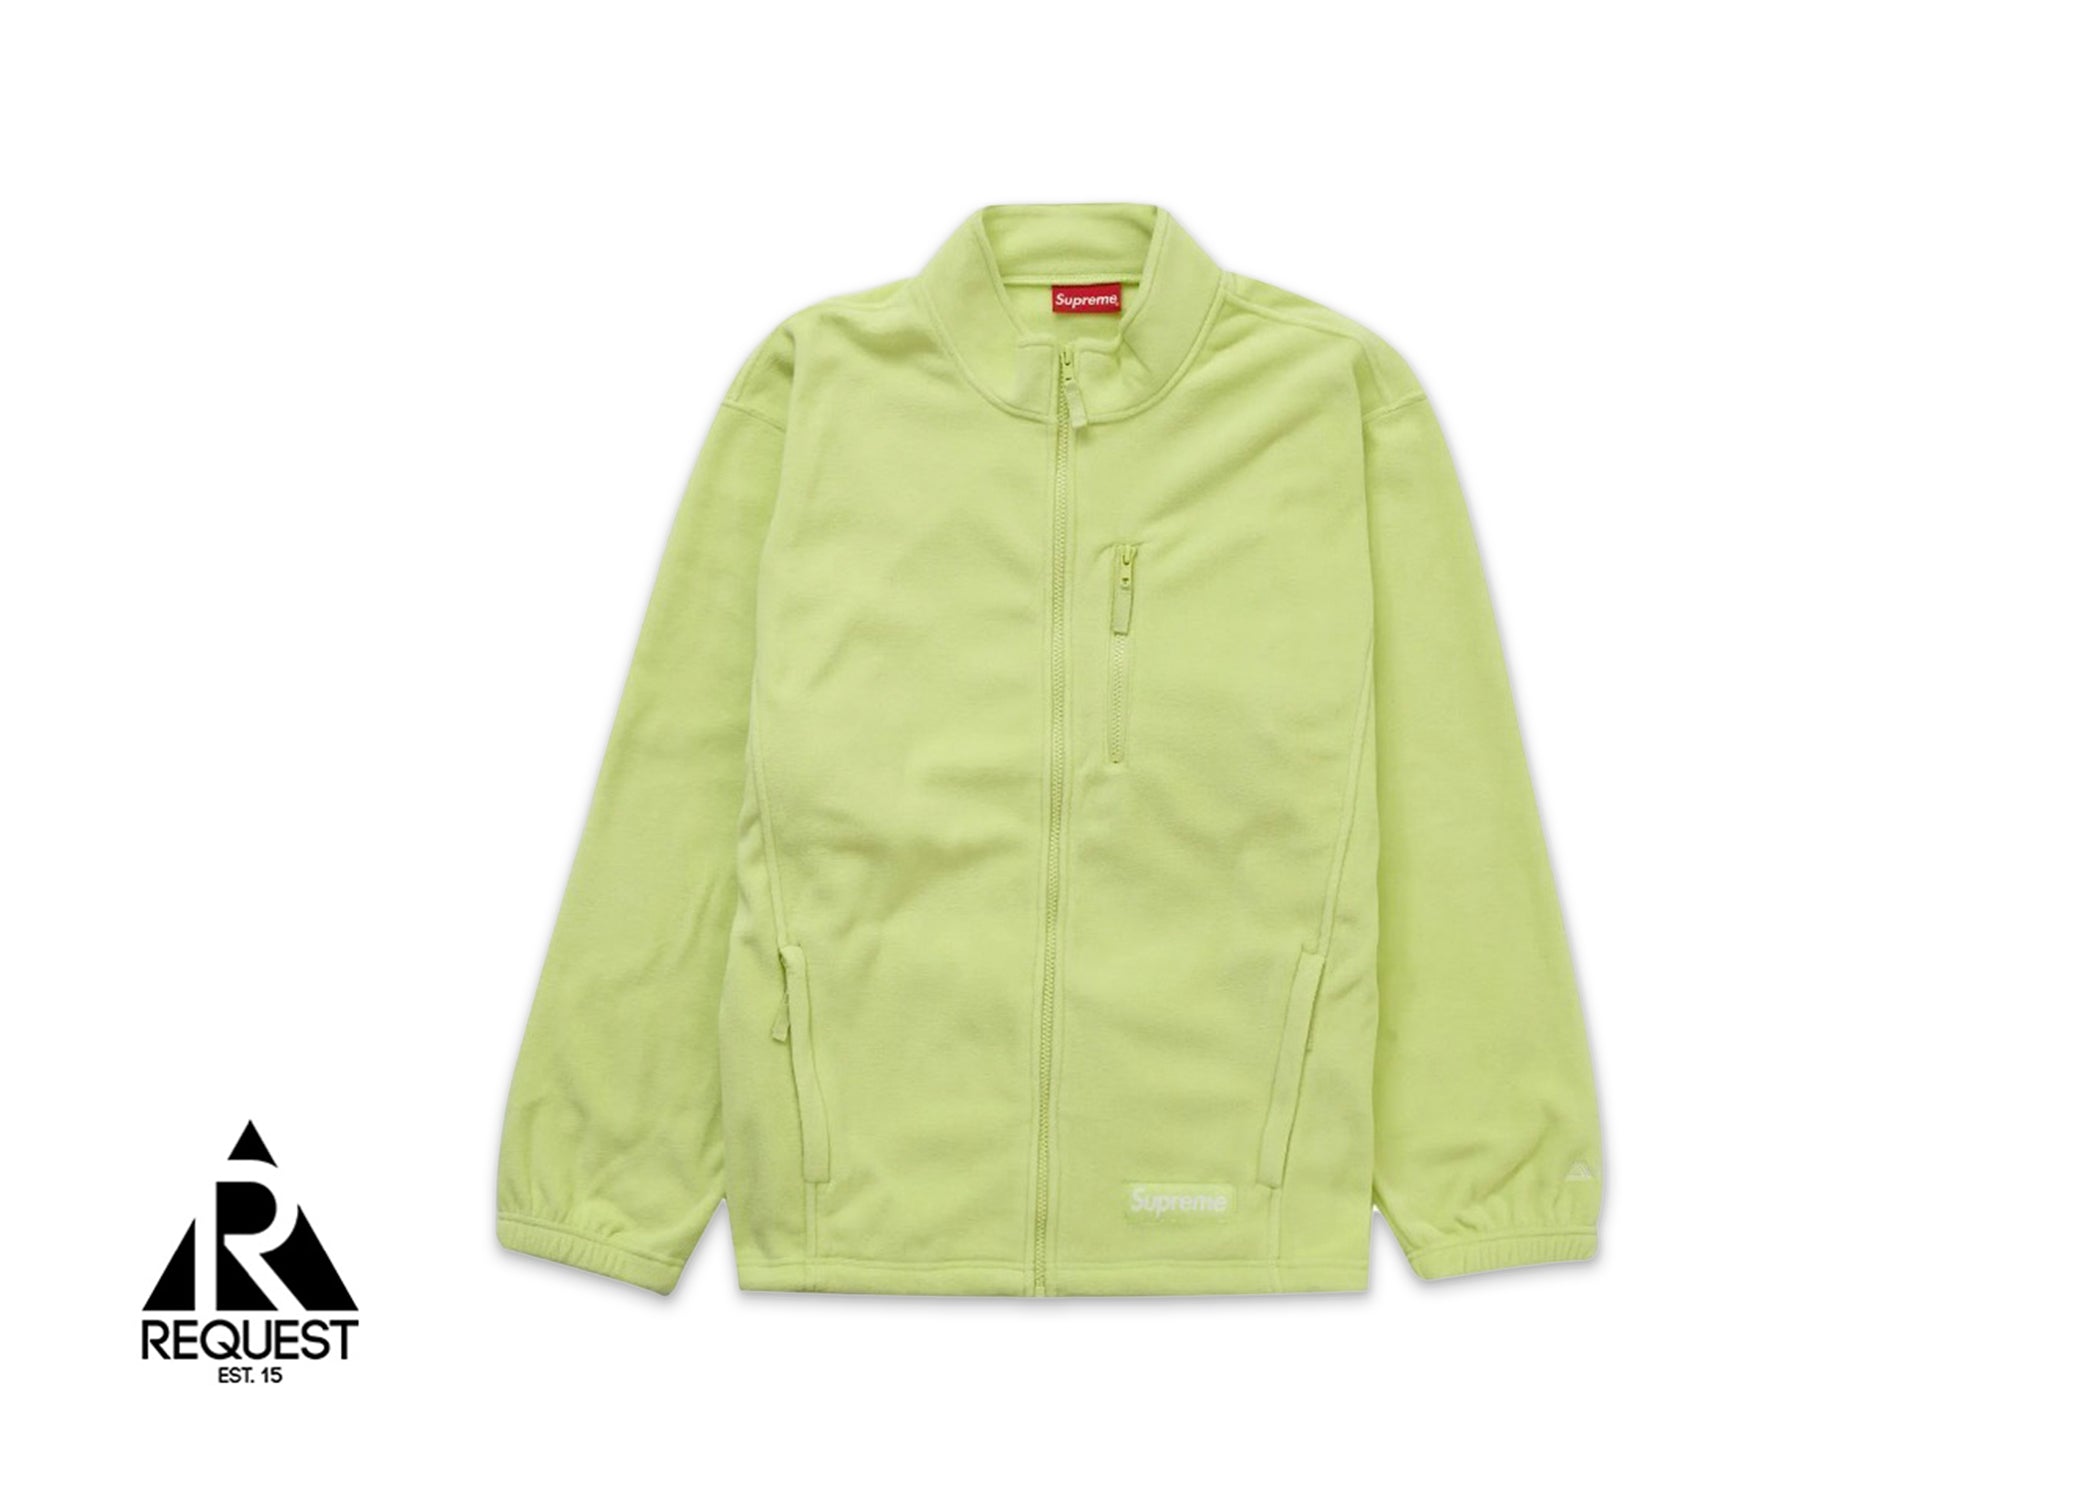 Supreme Polartec Zip Jacket “Lime” | Request